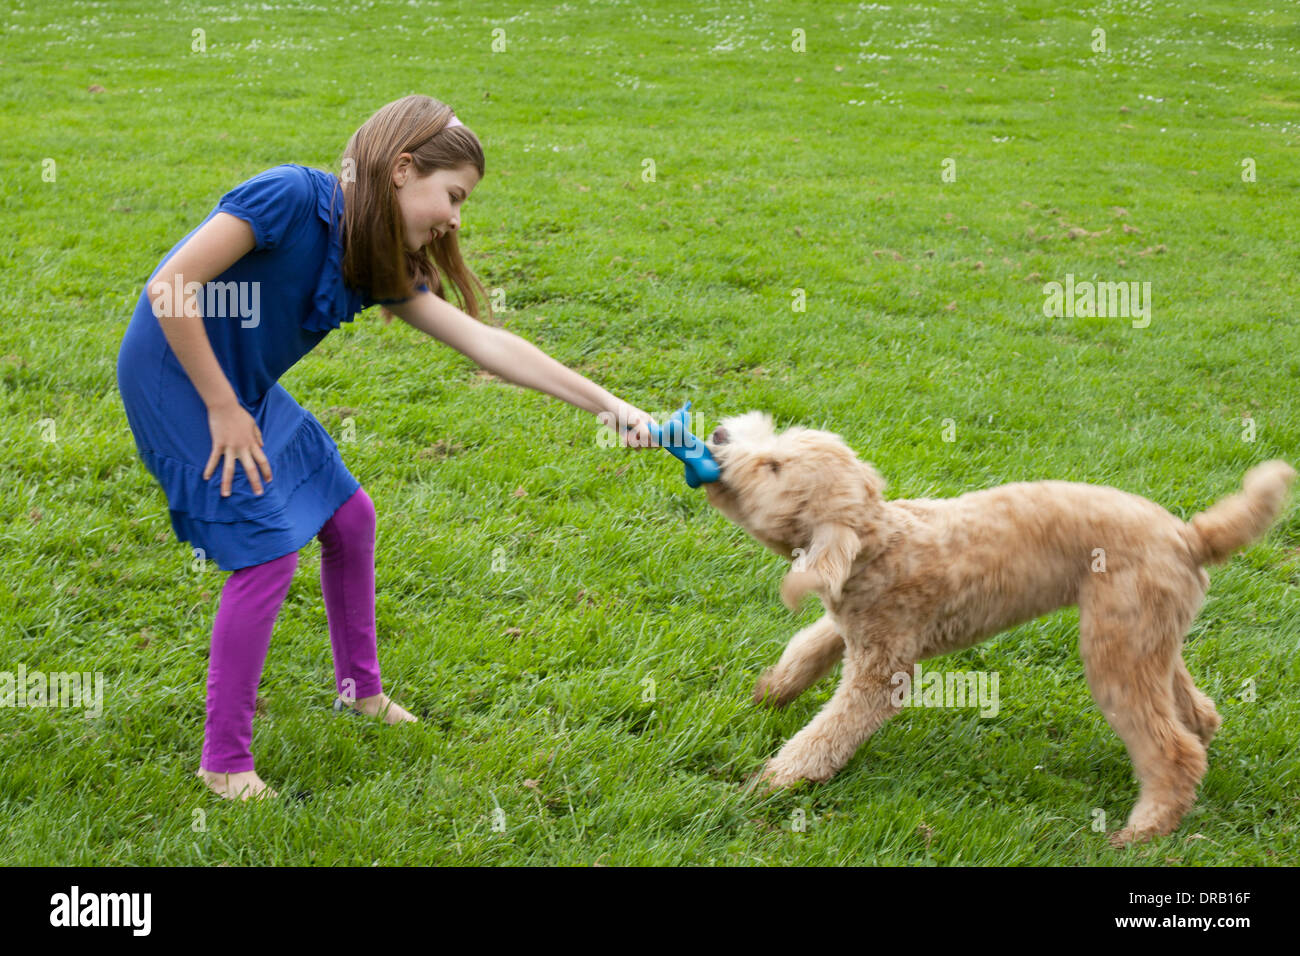 Fille jouant avec le chien sur l'herbe Banque D'Images